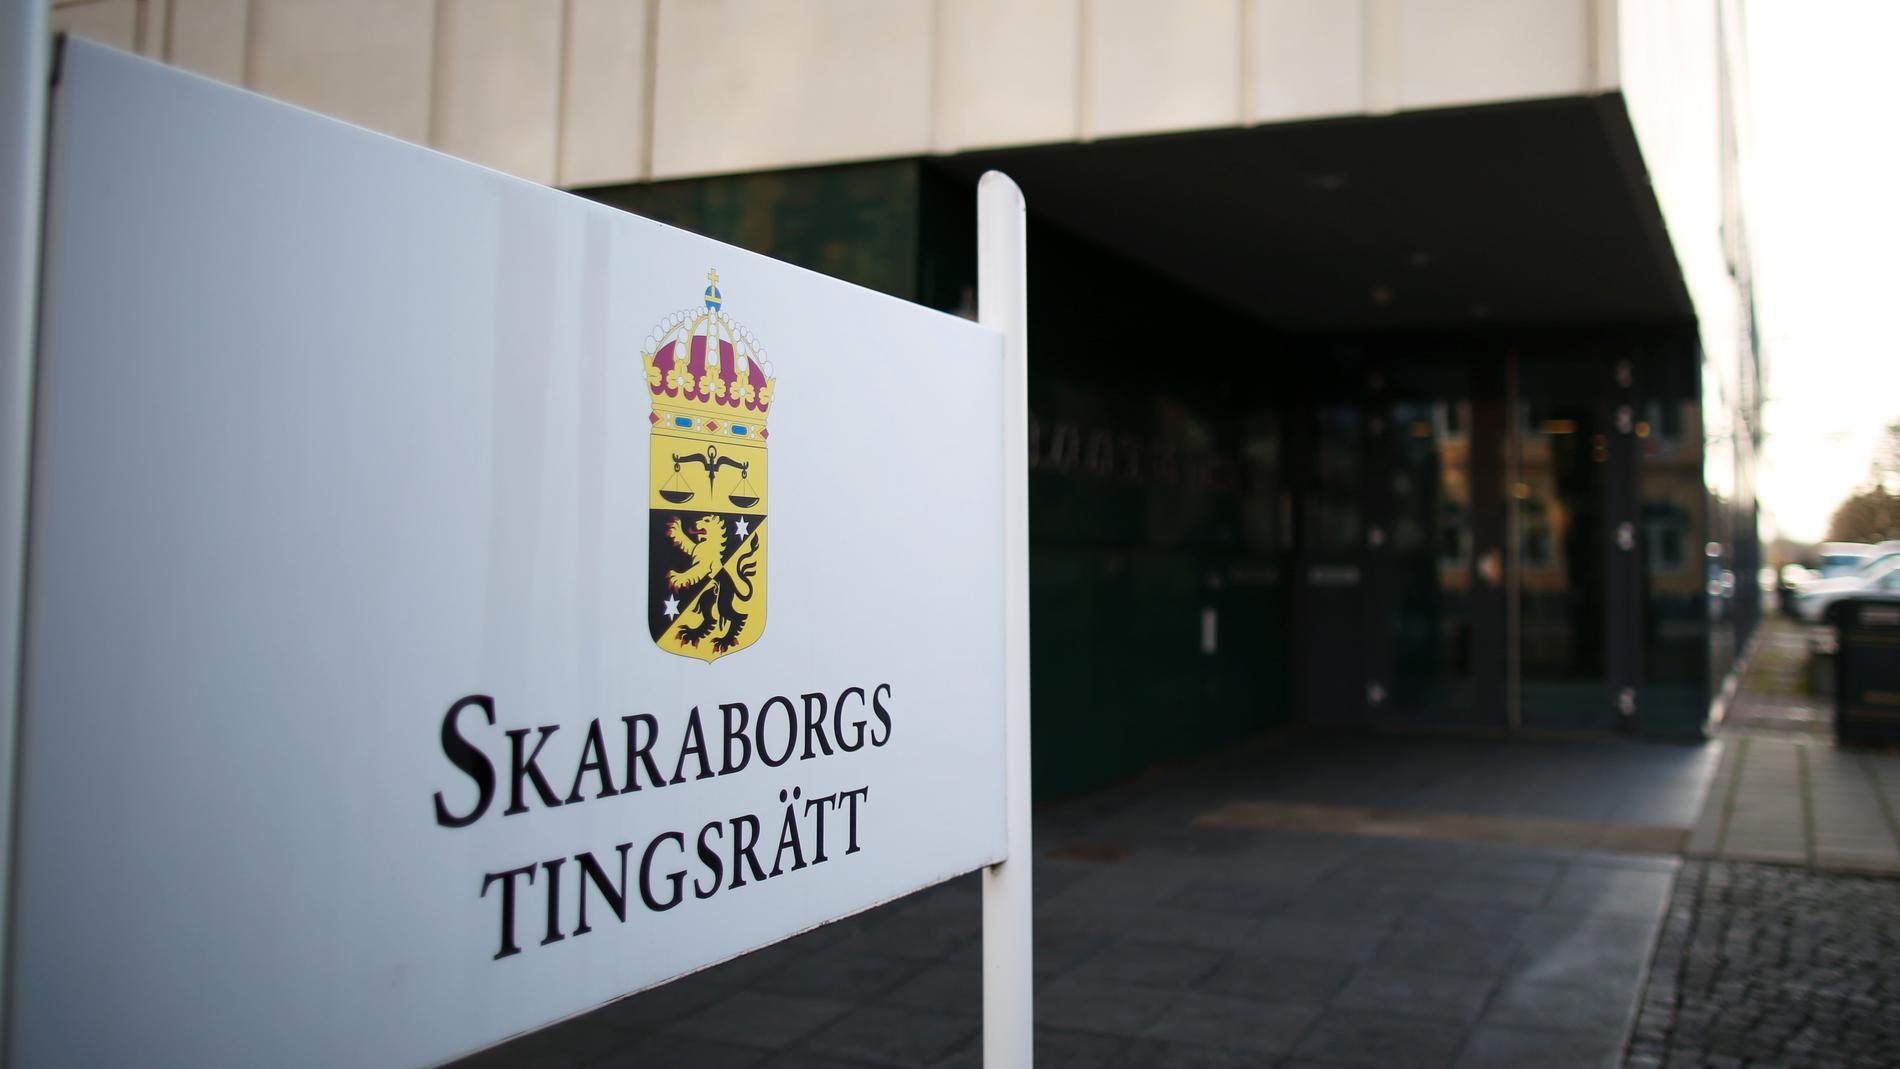 Fyra personer åtalas vid Skaraborgs tingsrätt för två fall av grov misshandel, stöld och olaga hot. Två av dem dessutom för våldtäkt. Arkvbild.